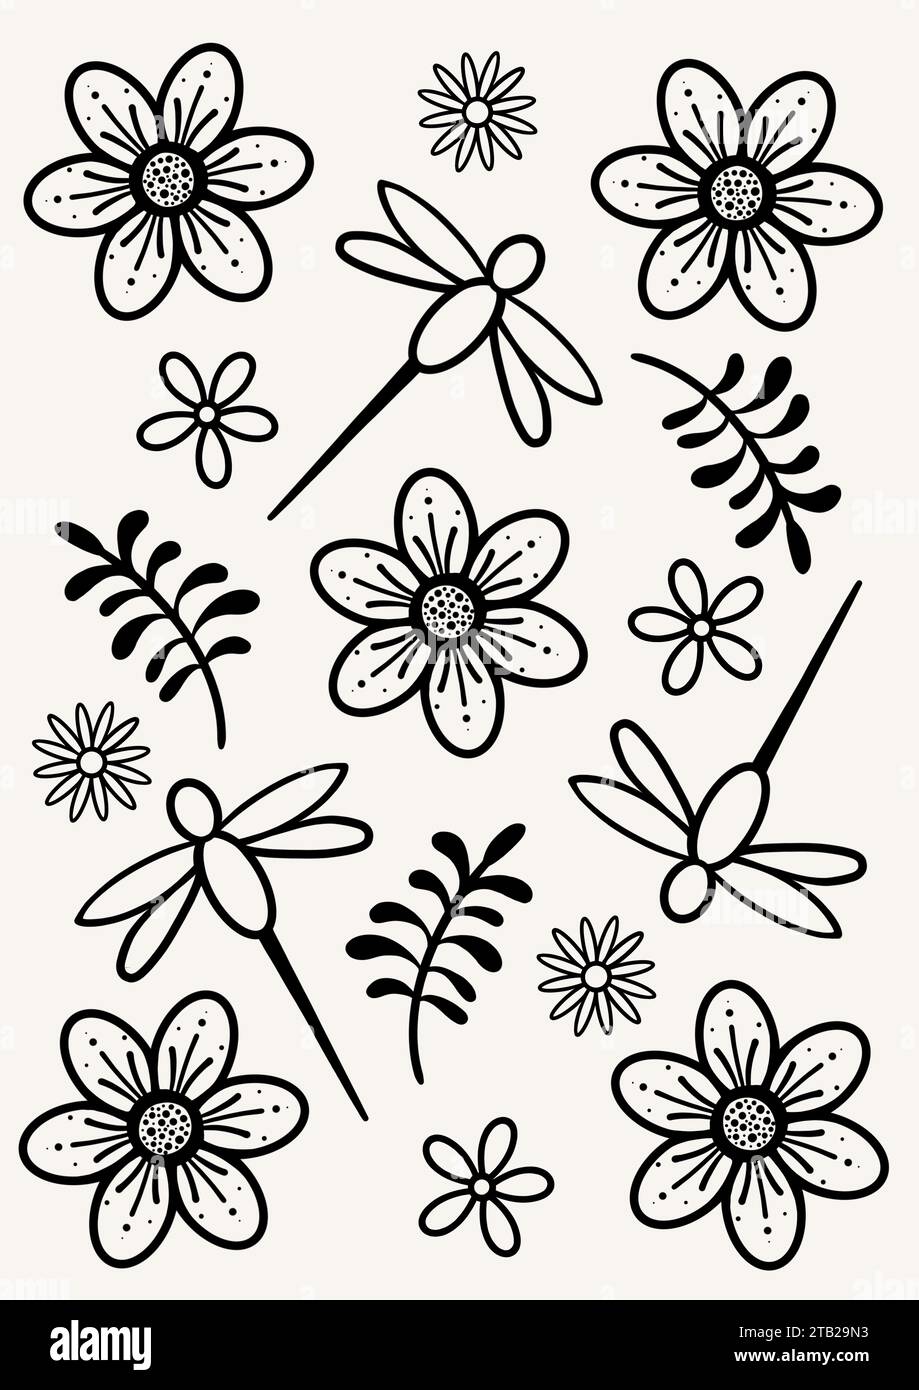 Motif floral avec libellule. Libellules avec des fleurs et des feuilles. Motif partout avec des motifs de fleurs, de feuilles et de libellules. Banque D'Images